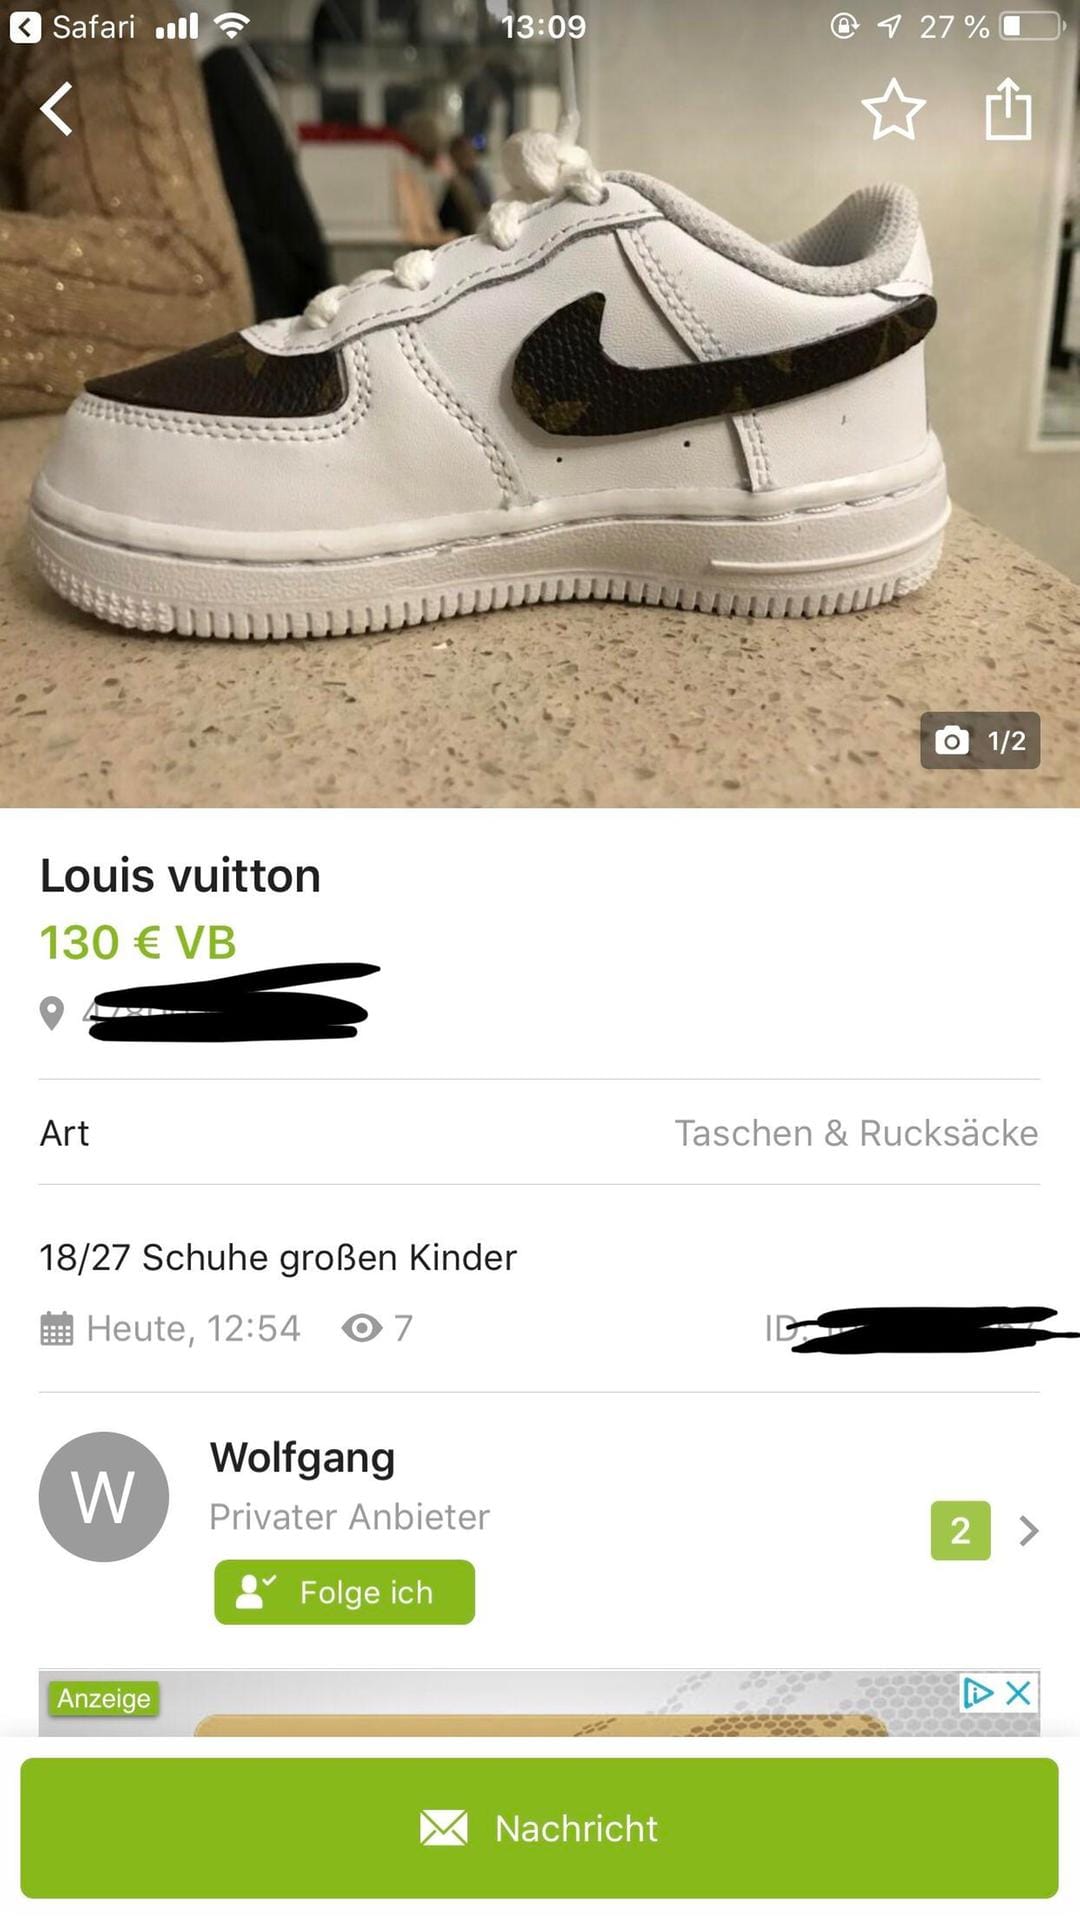 Echte Louis Vuitton: Einen Versuch ist es sicher Wert, Wolfgang.